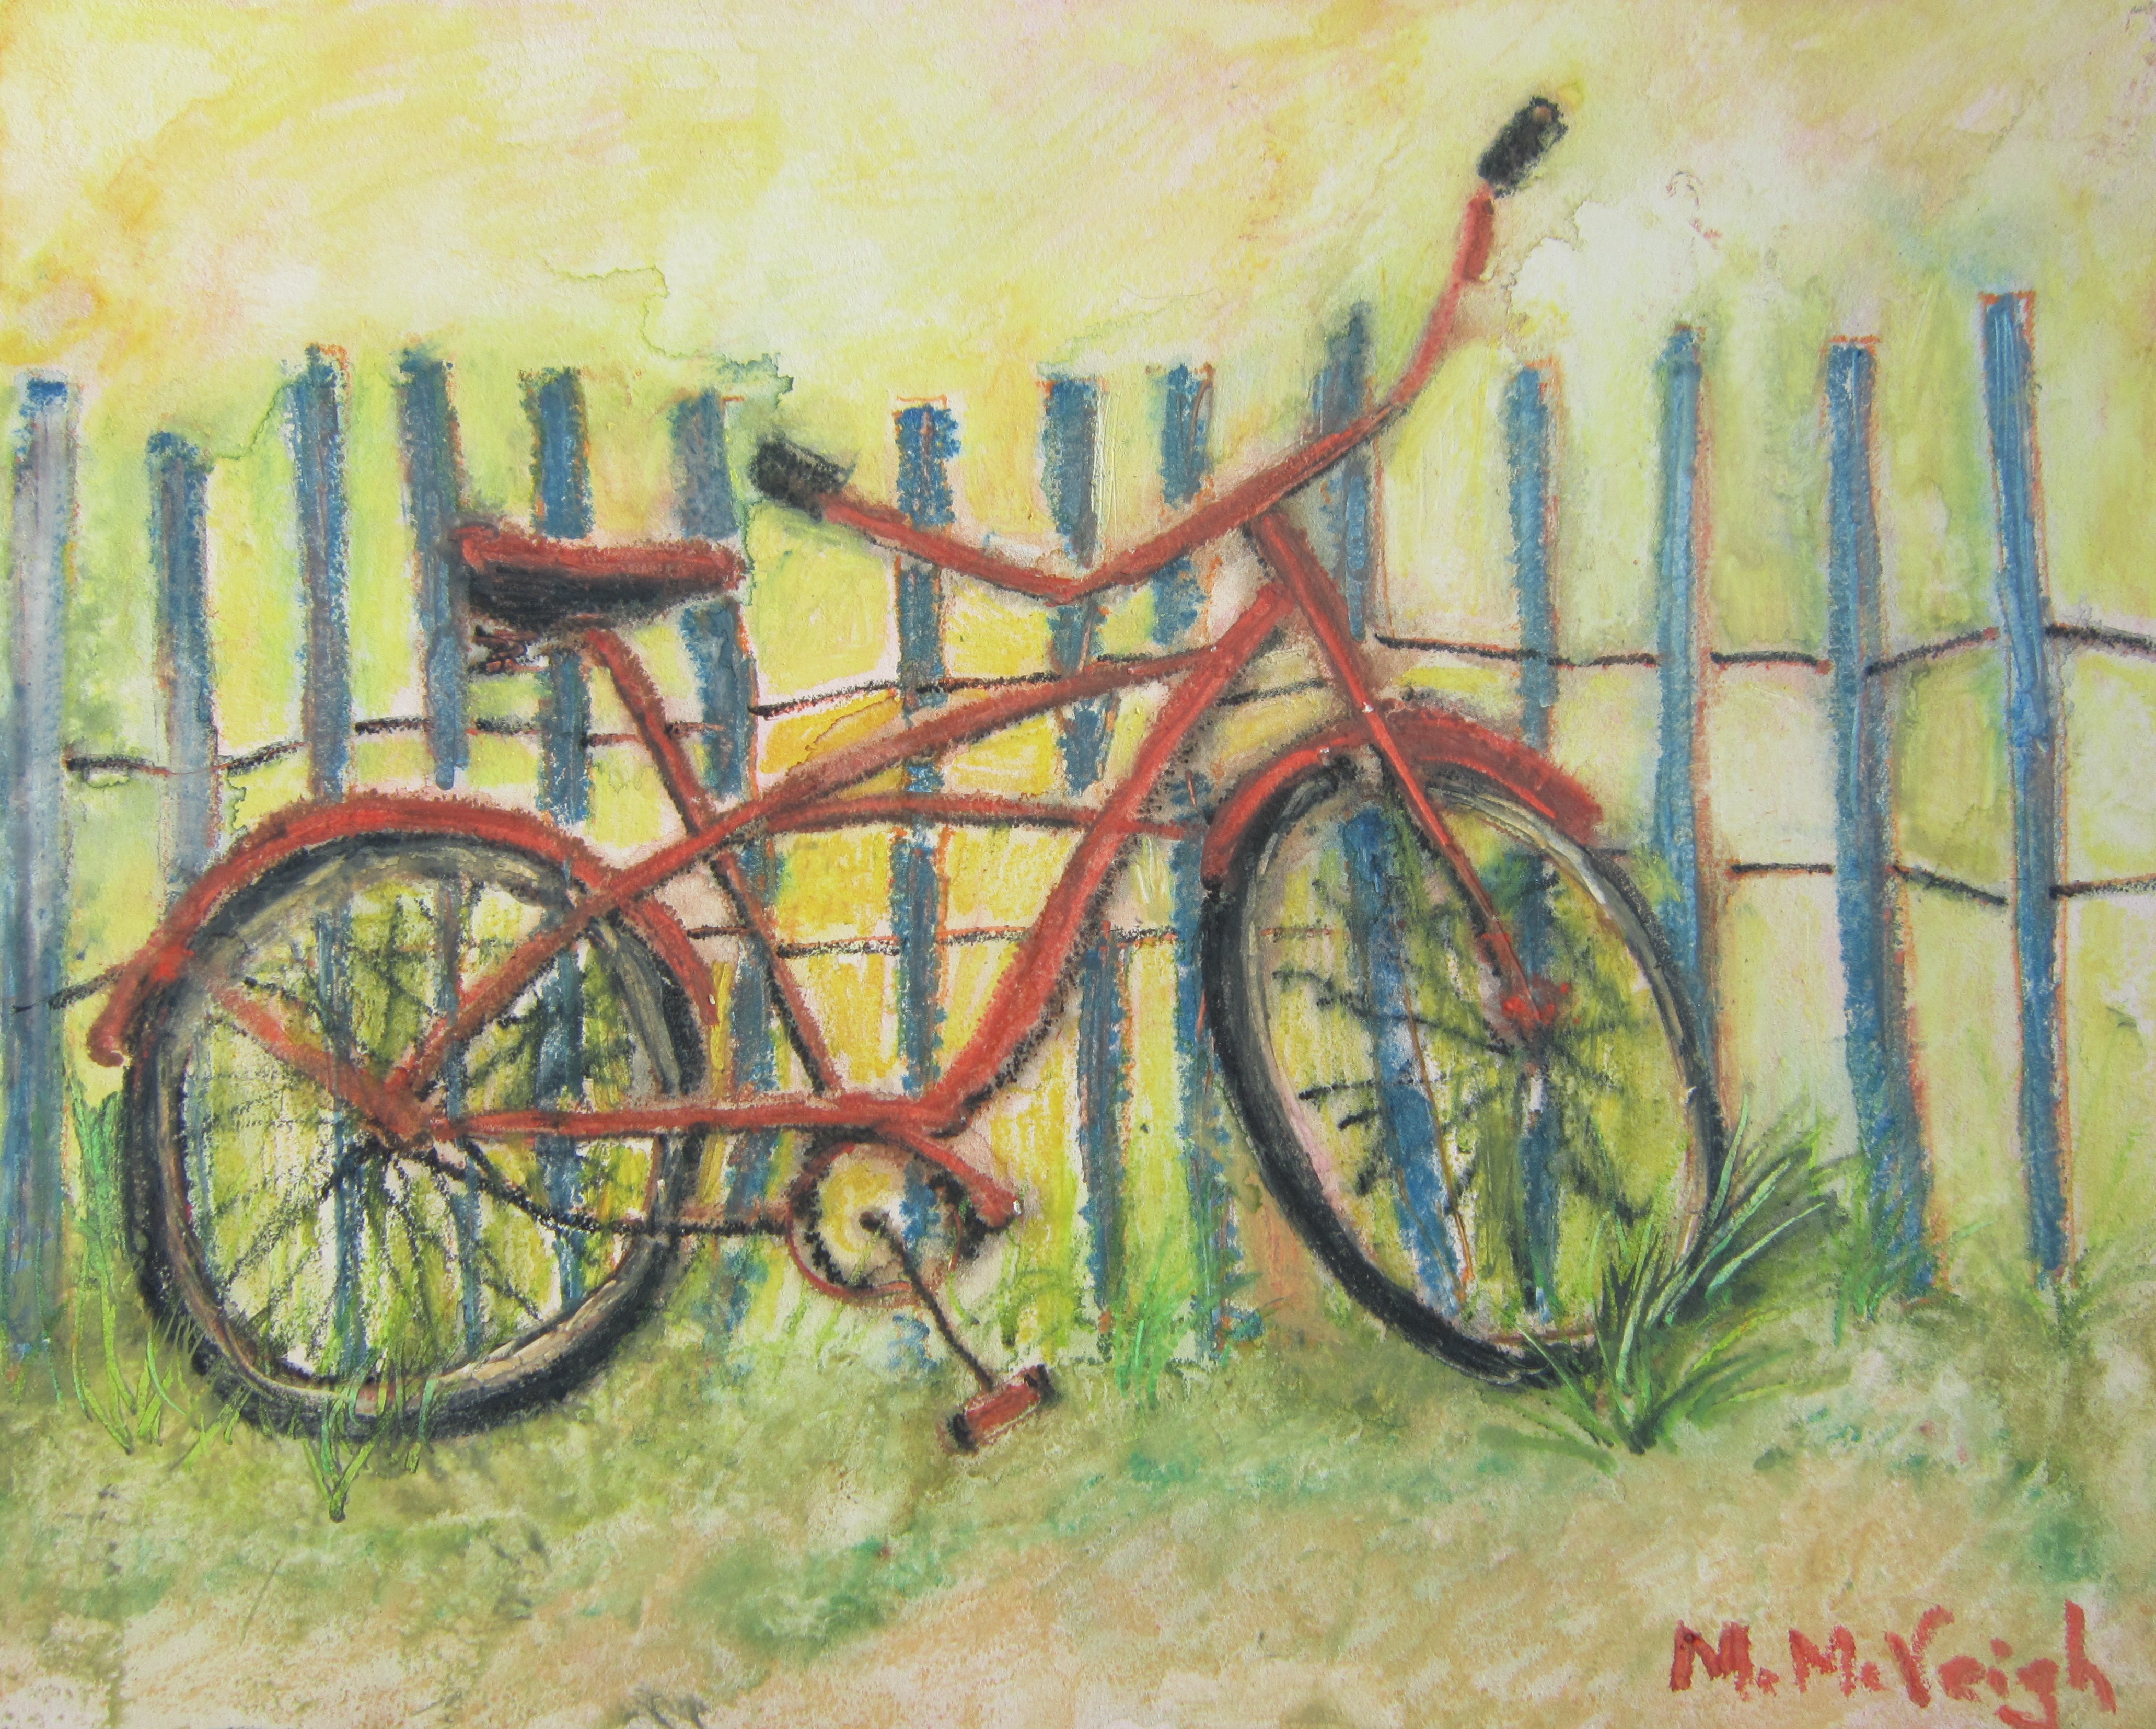 The Old Bike